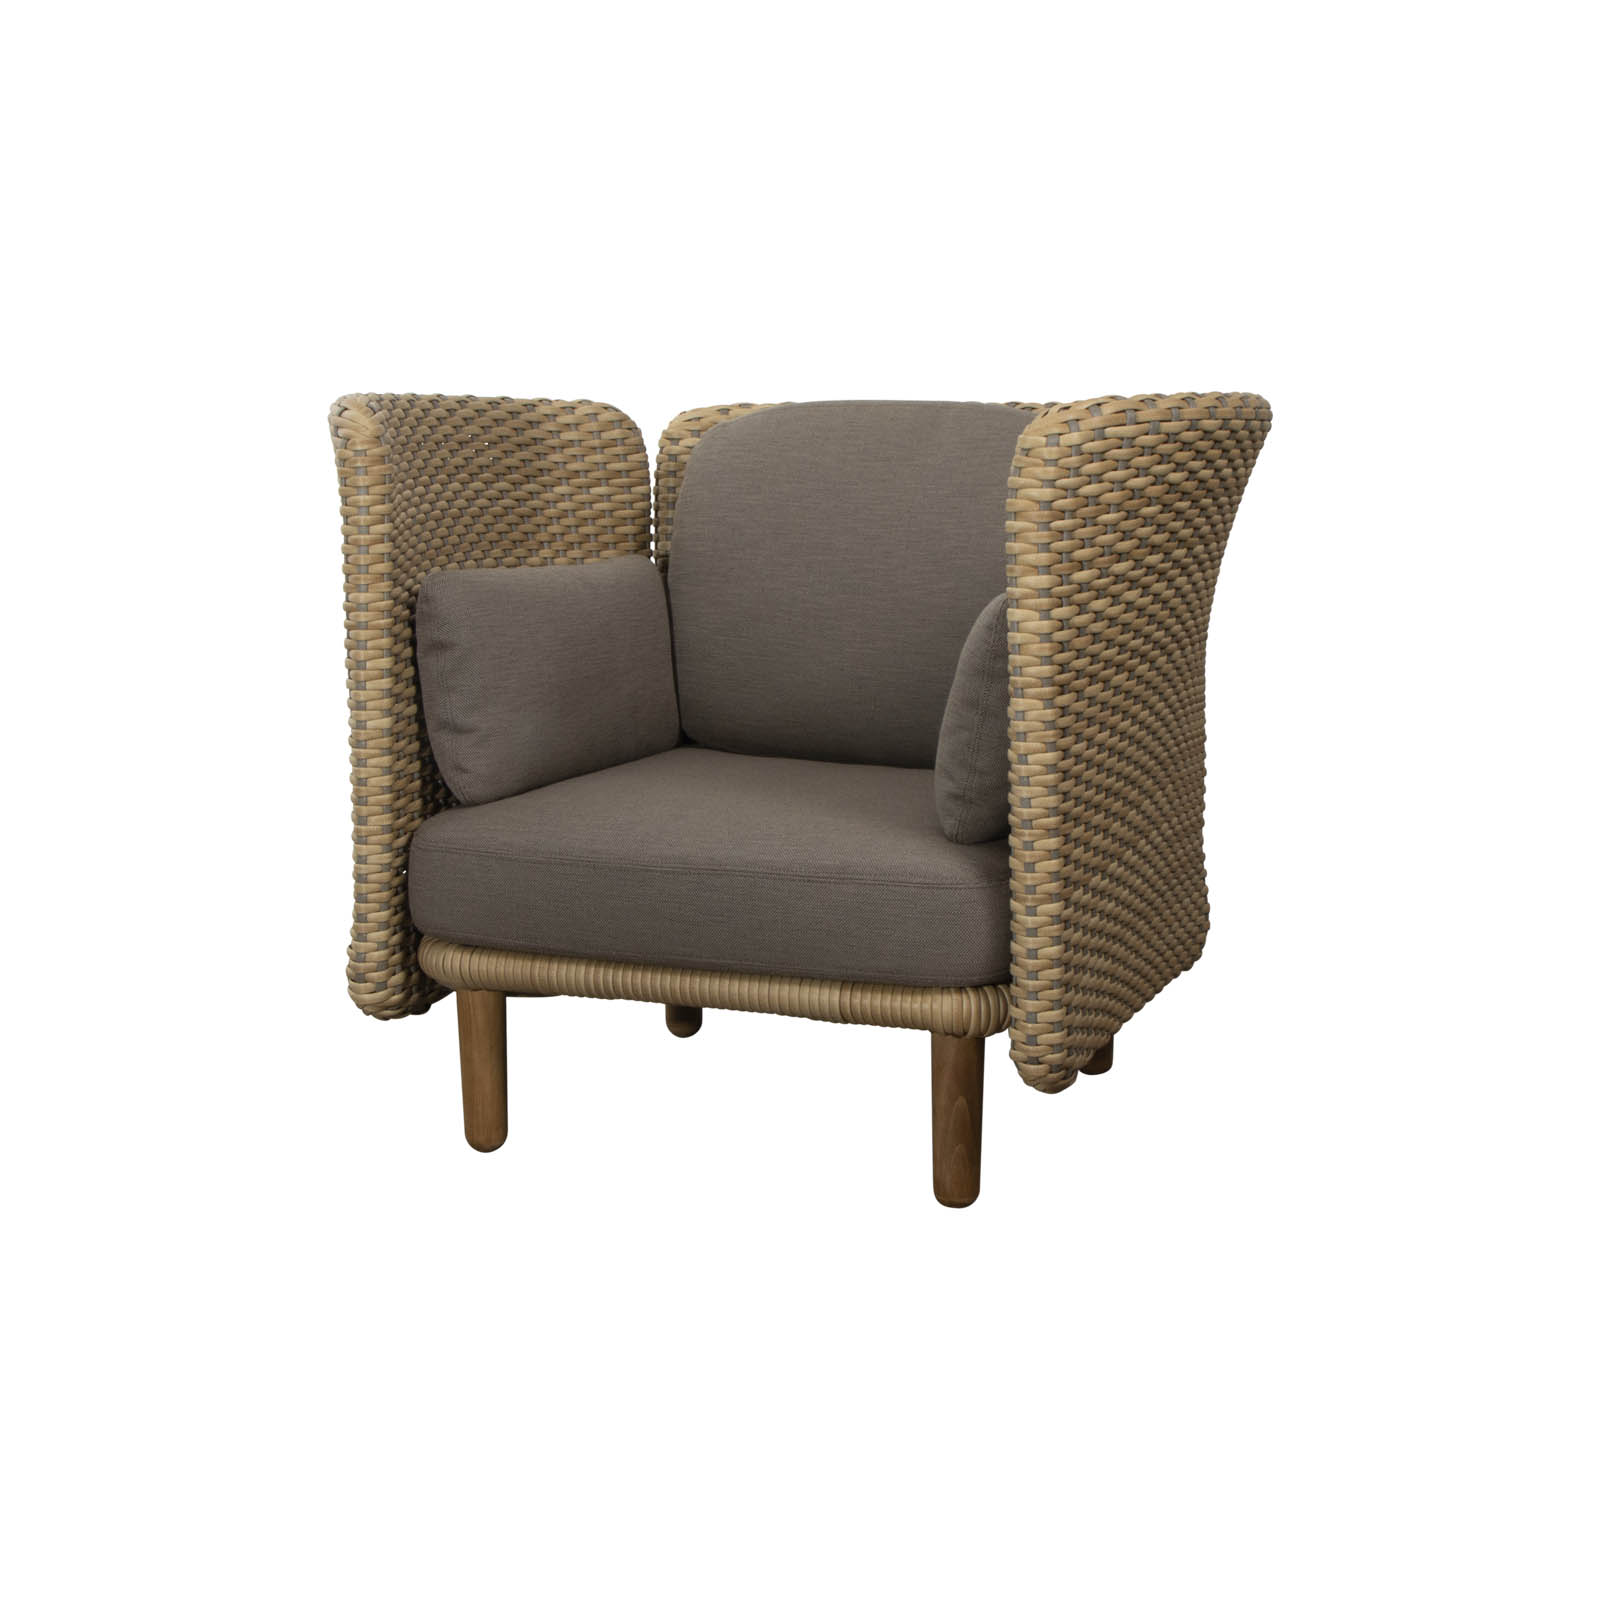 Lounge Chair mit hoher Armlehne oder Rückenlehne 5 Arch aus CL Flat Weave in Natural mit Kissen aus CL AirTouch in Taupe